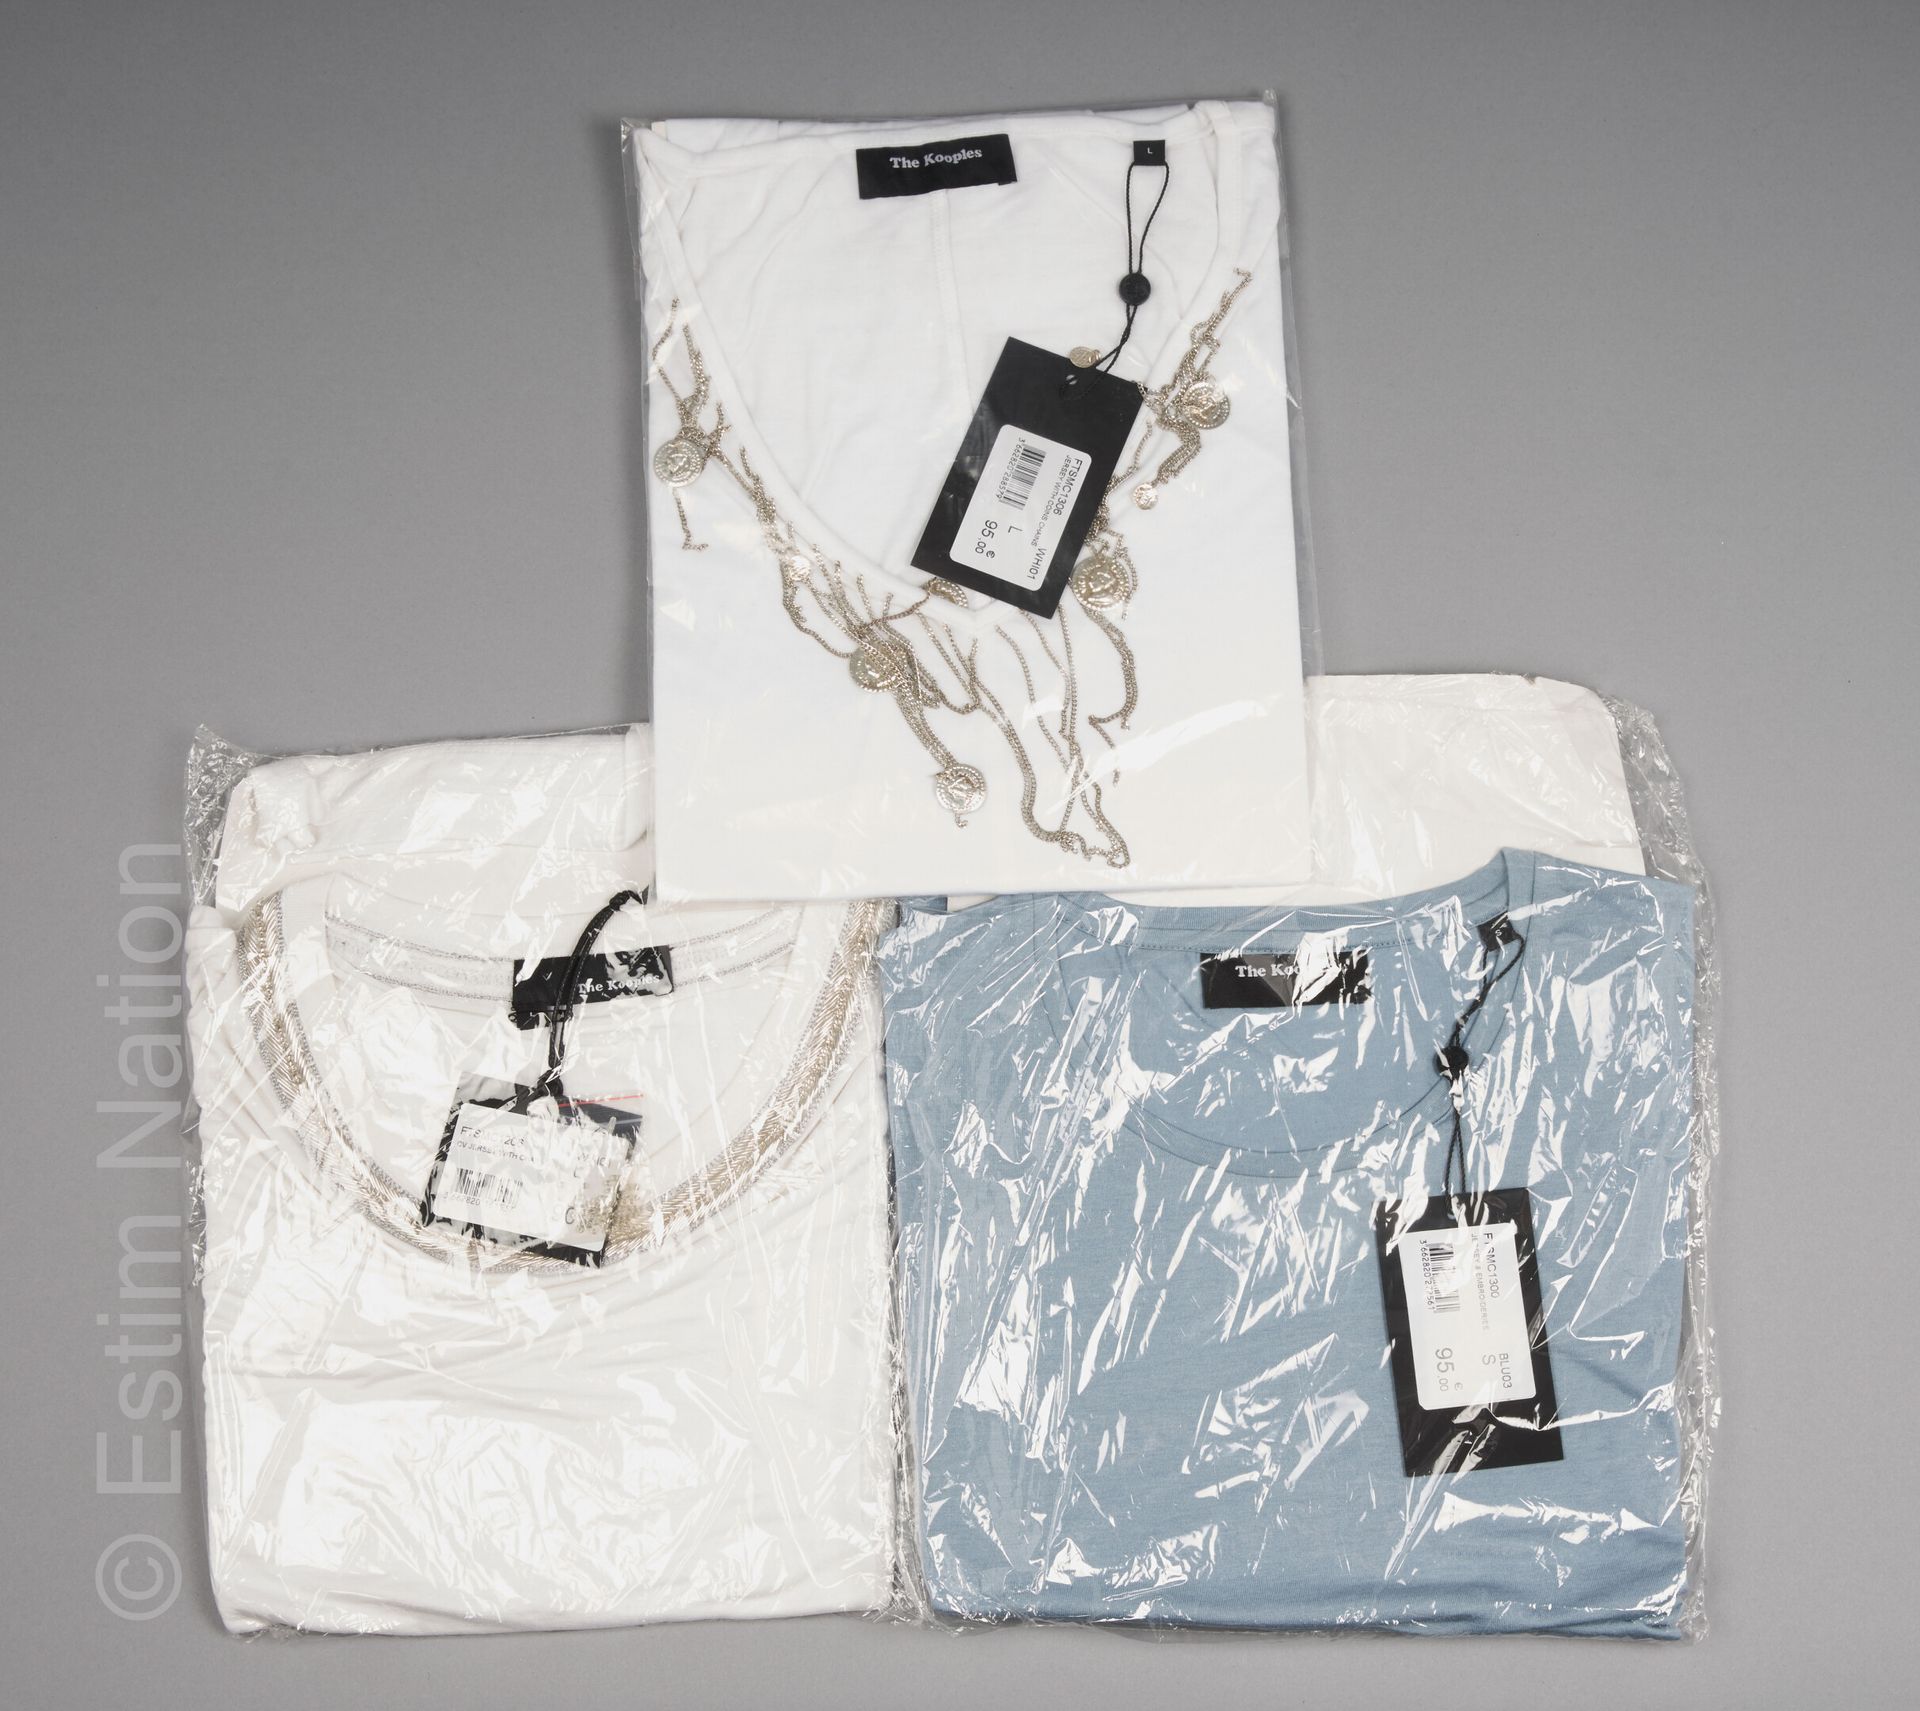 The KOOPLES TROIS TOPS en jersey blanc et bleu rehaussés de broderies, chaînes e&hellip;